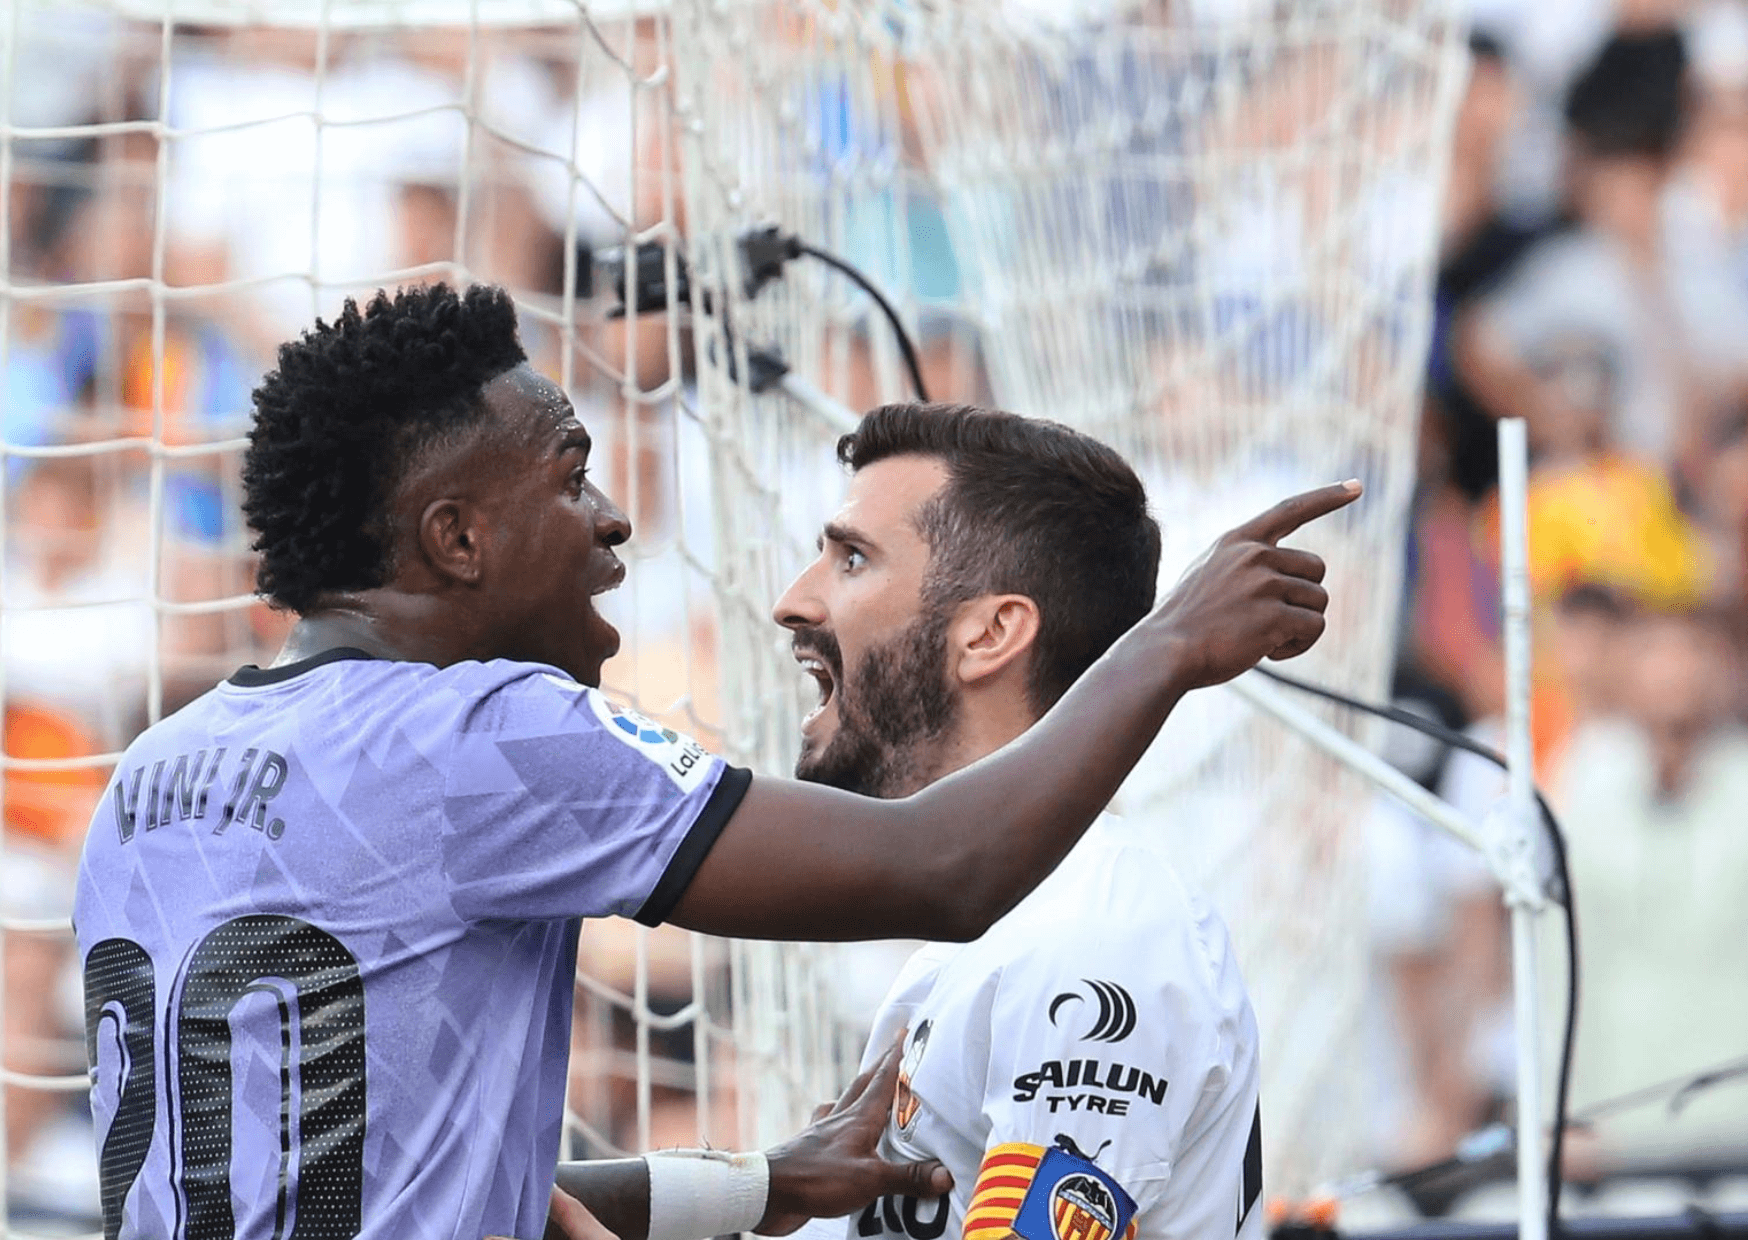 Rassismusvorfall gegen Vinicius Jr. – Die Notwendigkeit, gegen Rassismus im Fußball vorzugehen